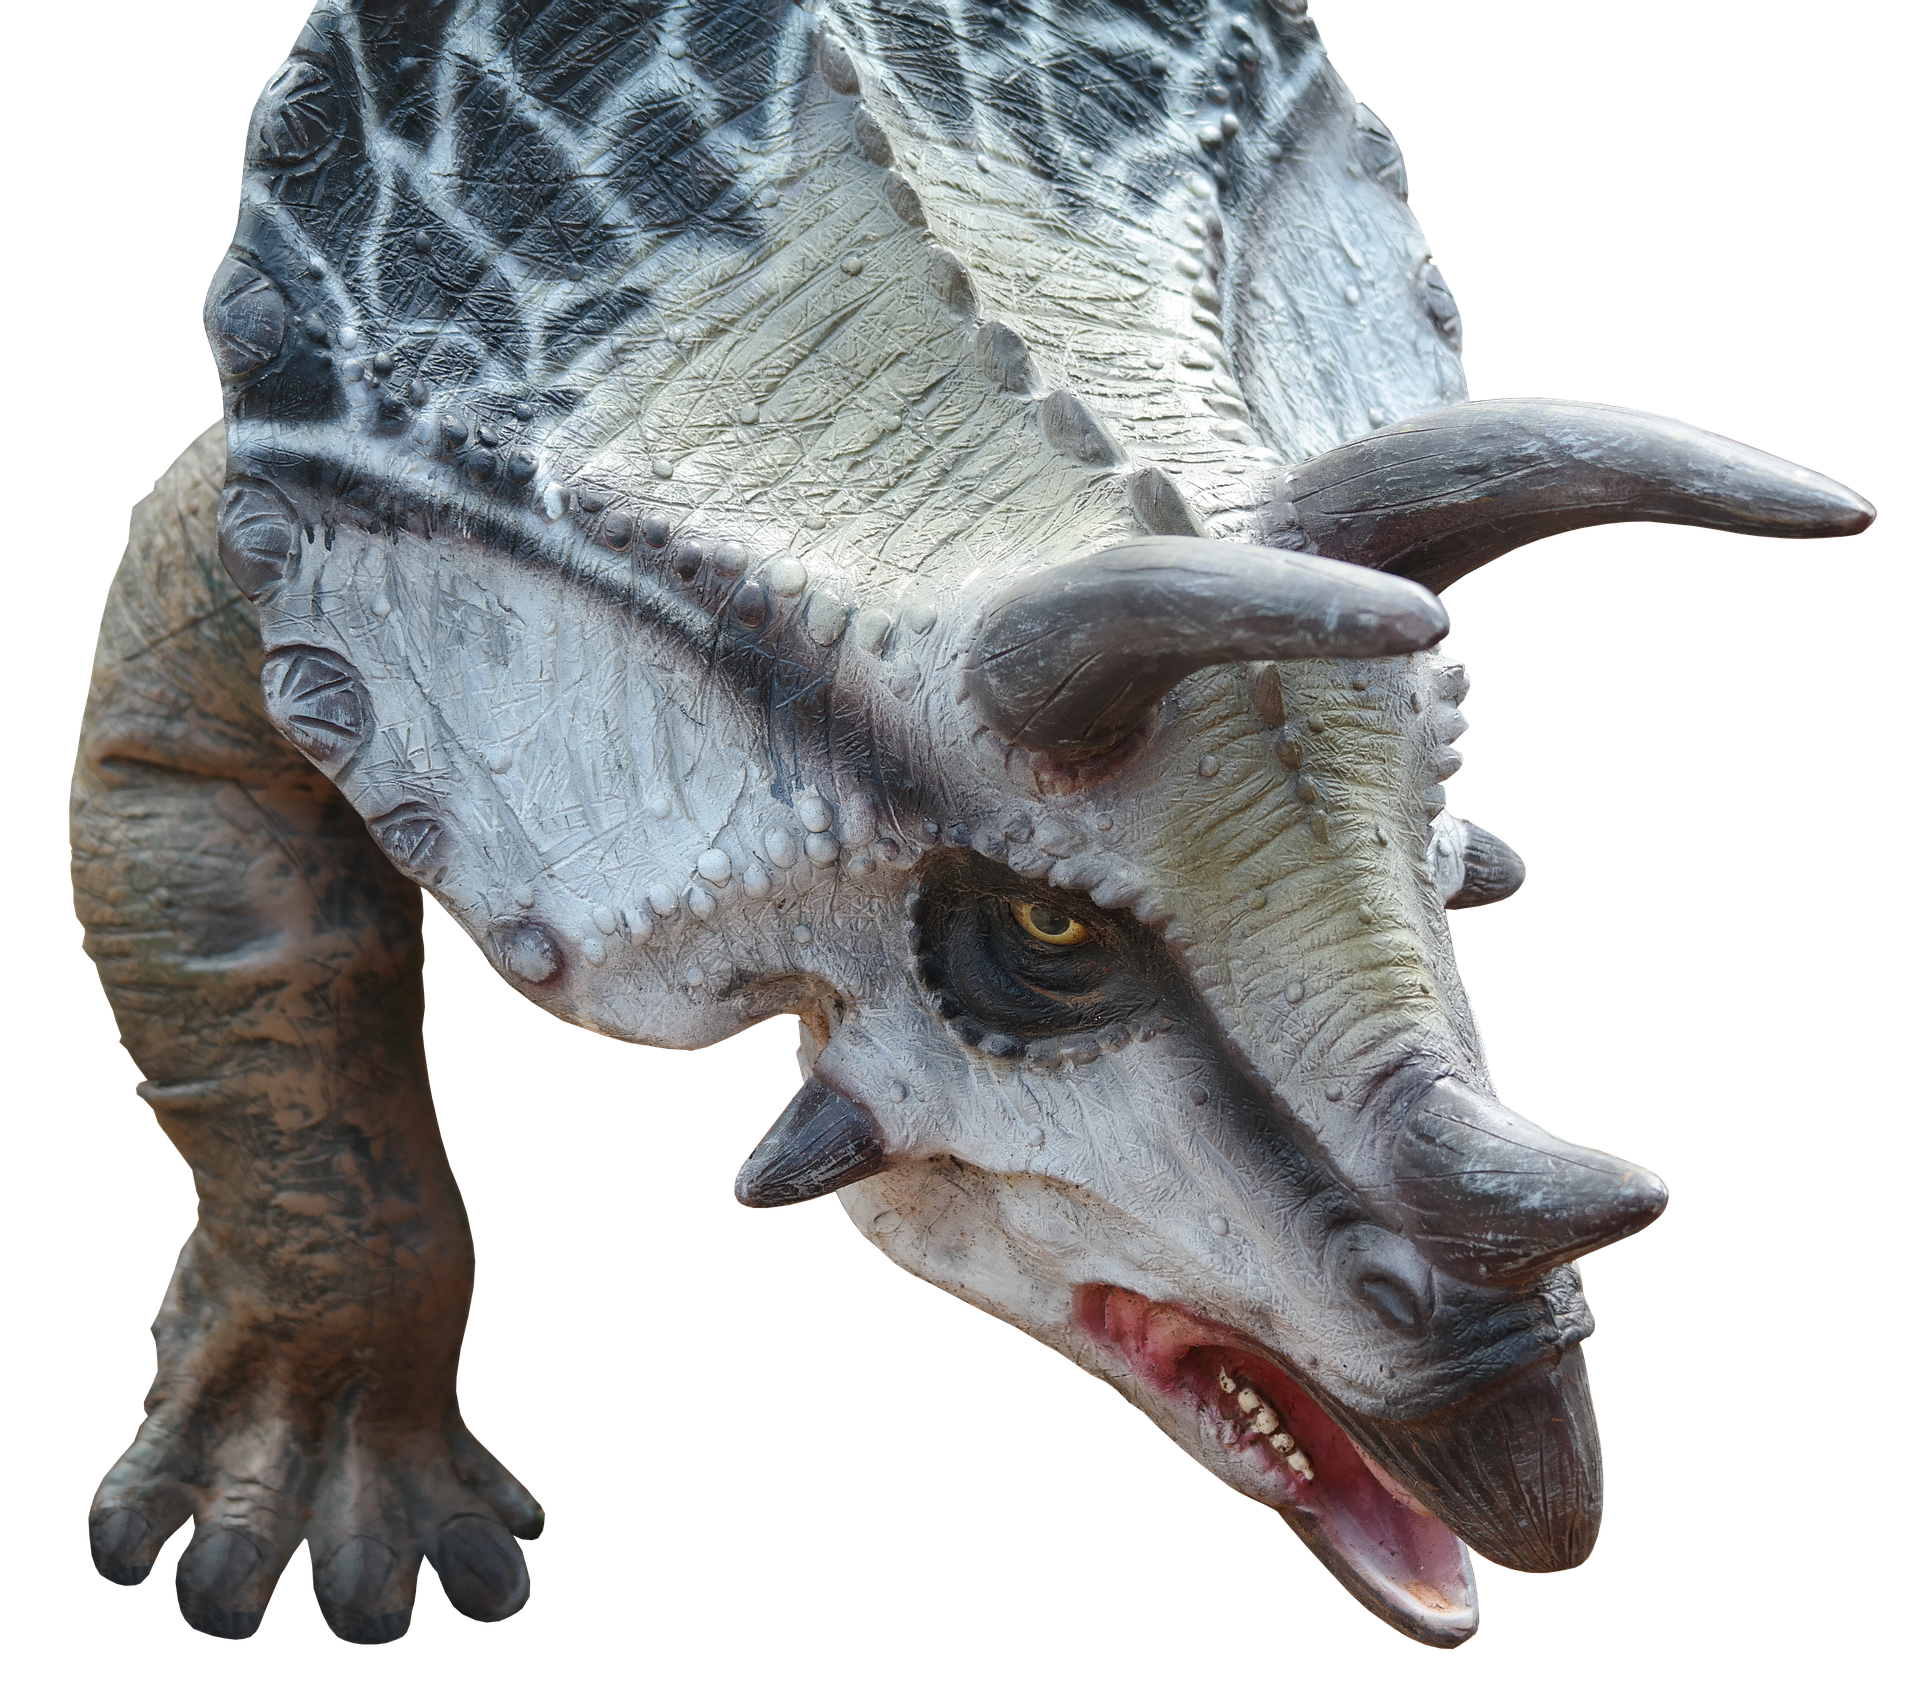 httpspixabay.comesphotosdinosaurio-dino-lagarto-gigante-2925336.png